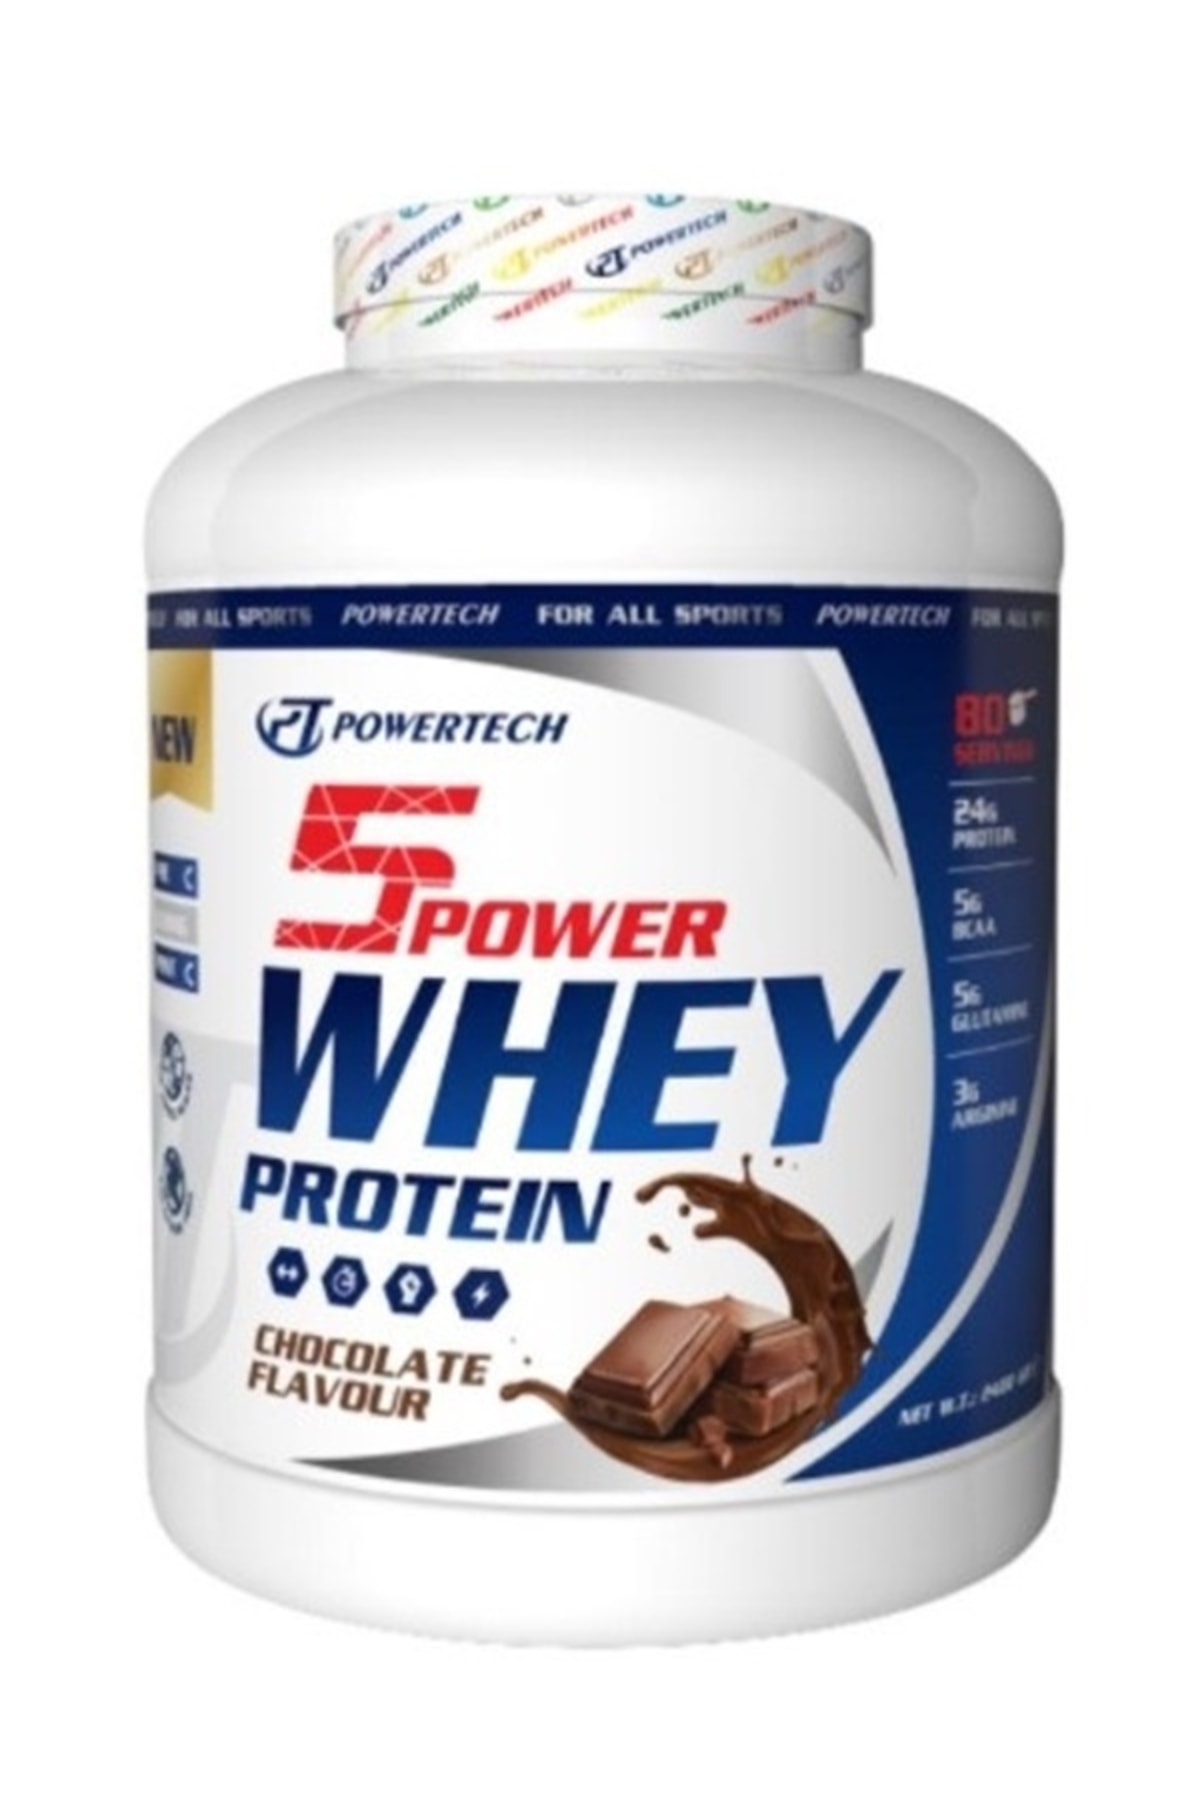 POWERTECH 5power Whey Protein 2400 Gr Çikolata Aromalı Protein Tozu Whey2400c